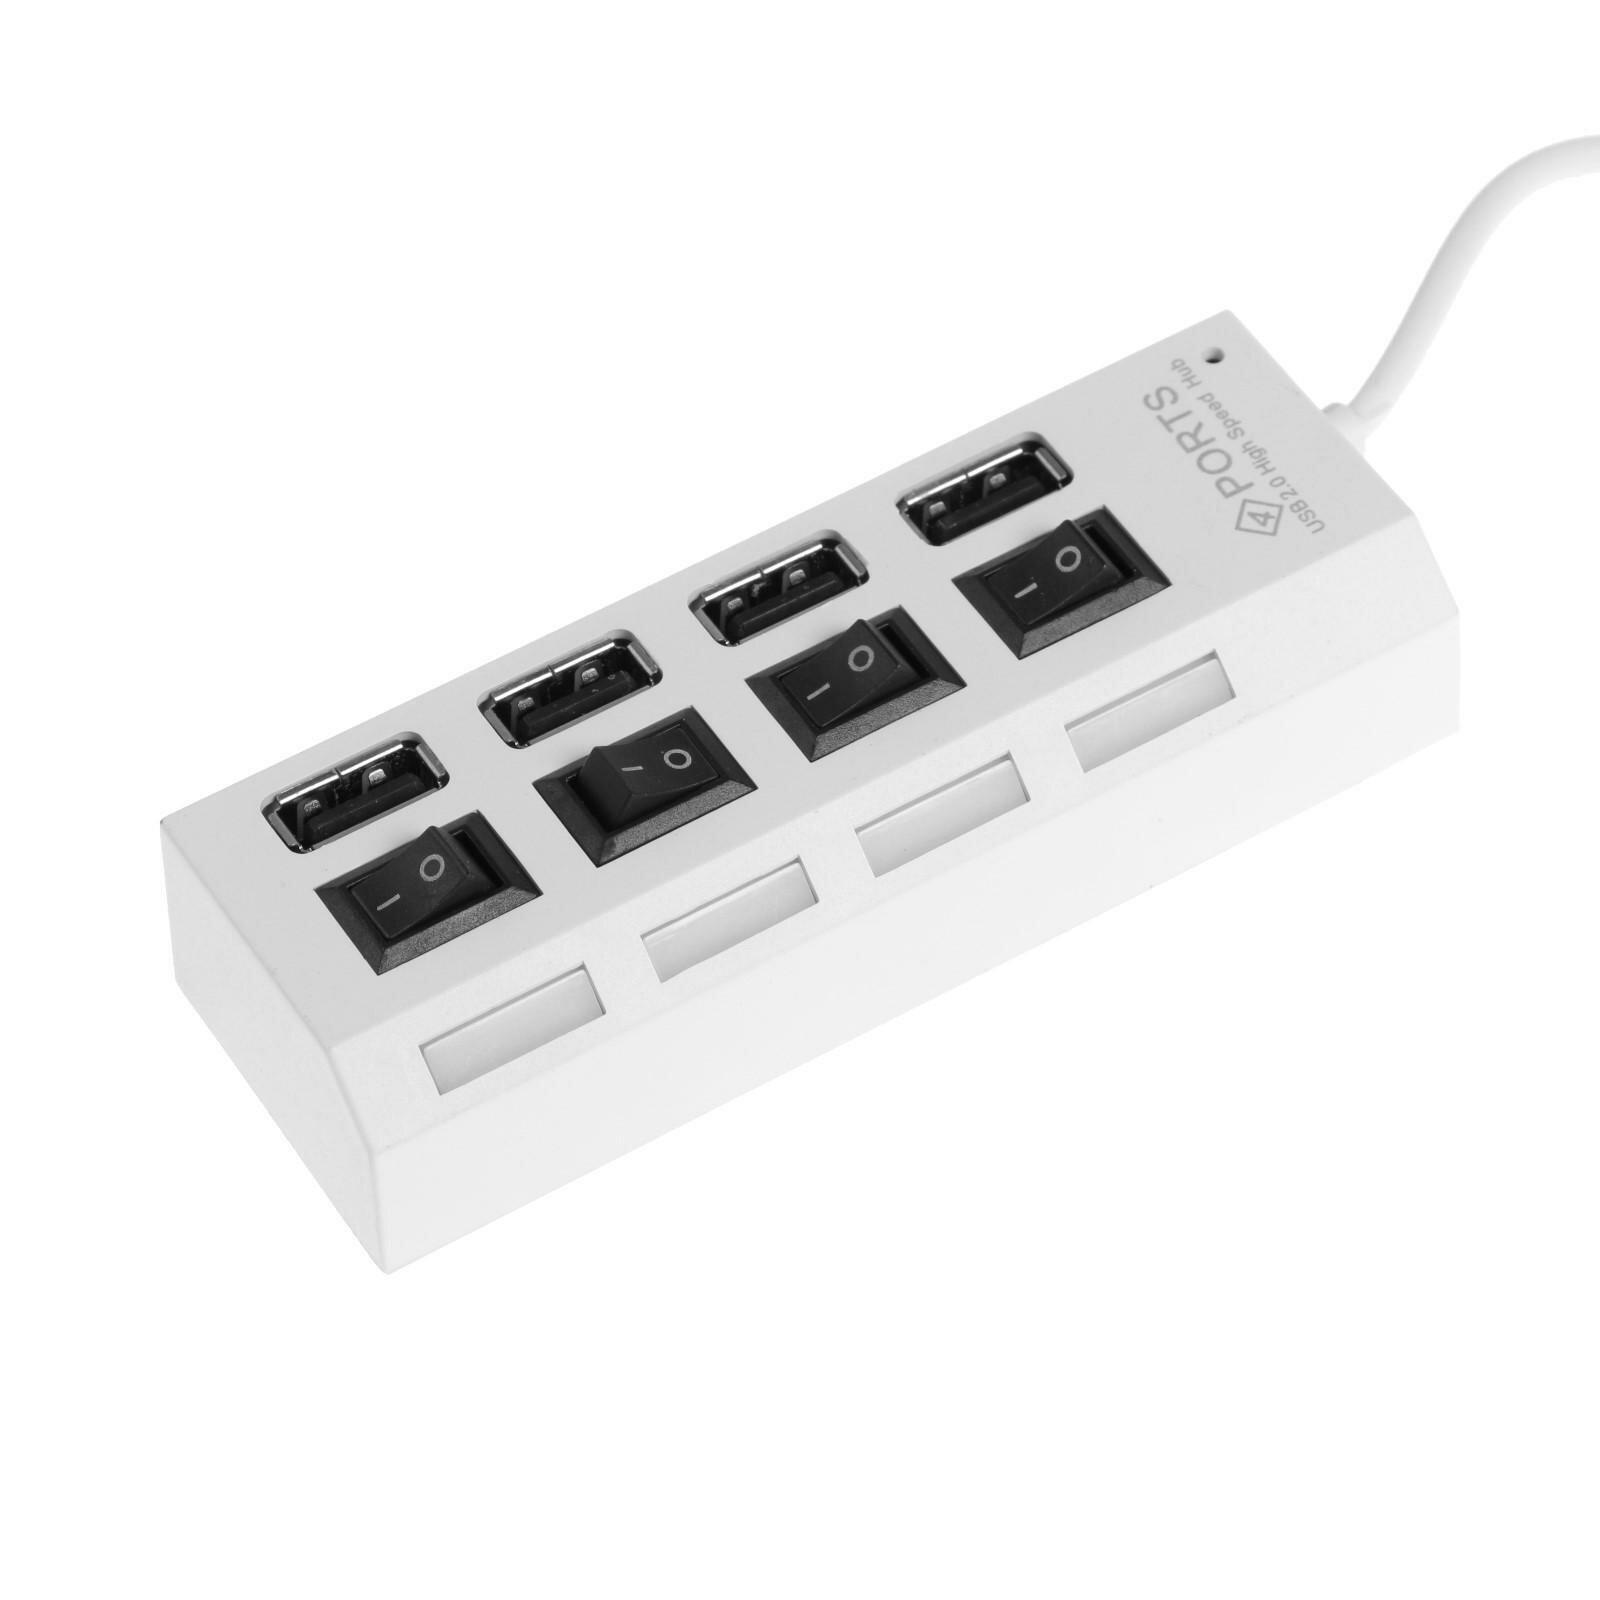 Картридер USB - Xaб Luazon (64TT-16921) 4 порта с выкл. (белый)